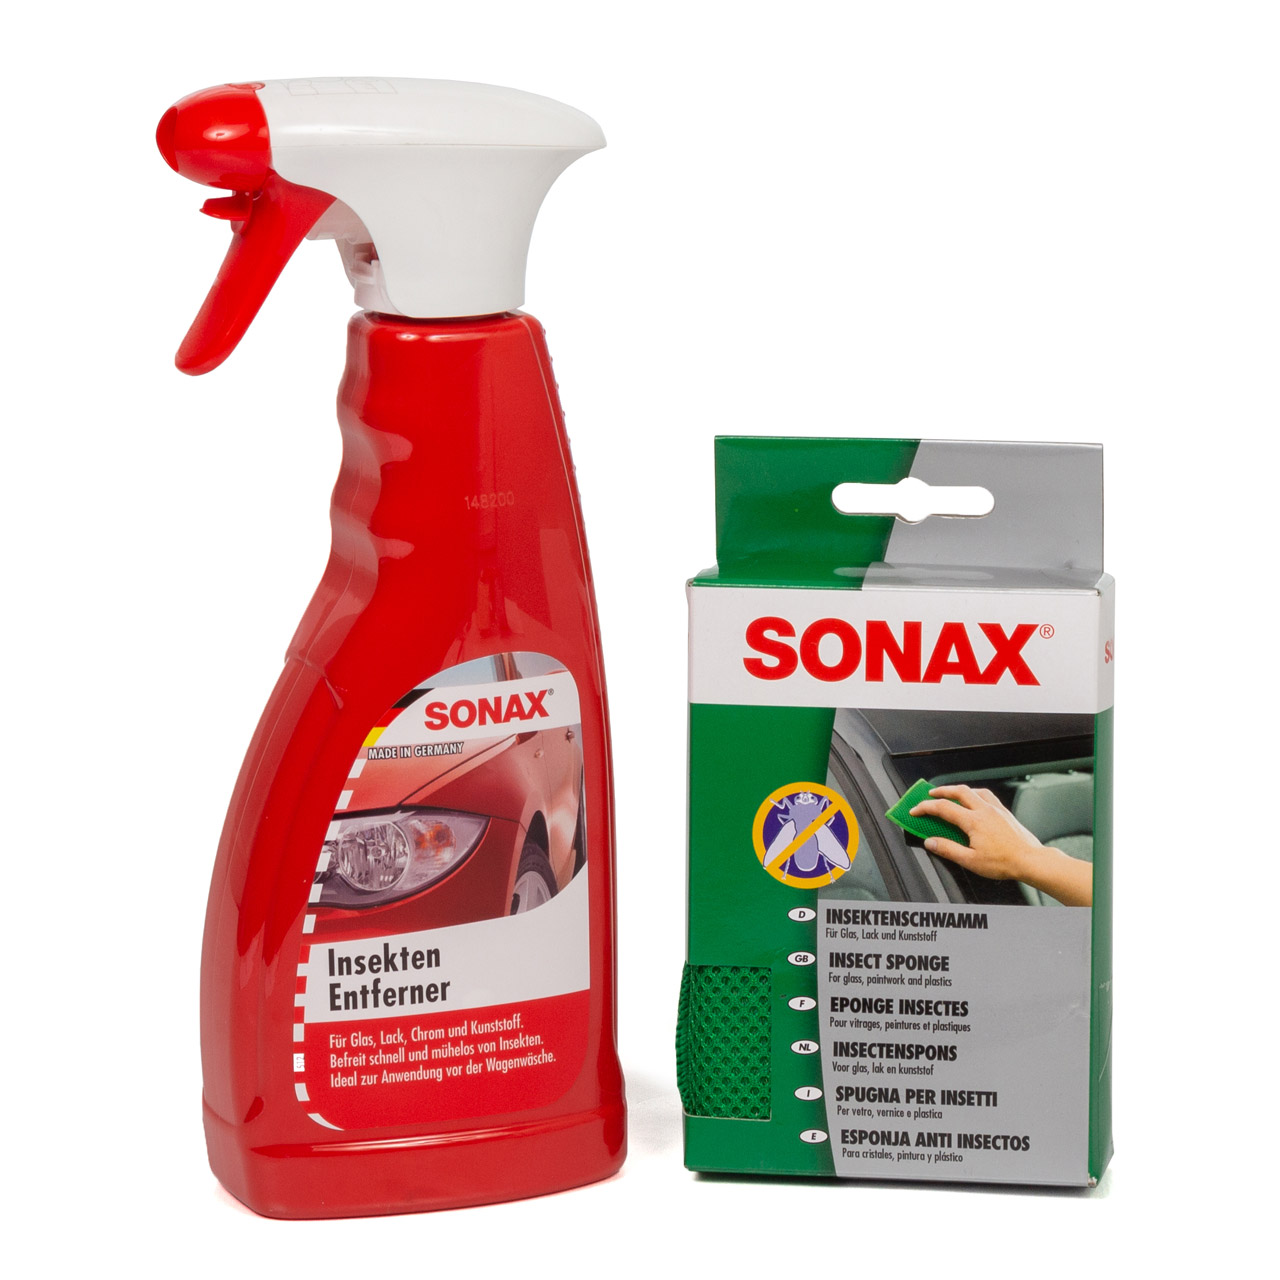 SONAX Insekten Entferner Insektenentferner 500ml + Lack Insektenschwamm Schwamm